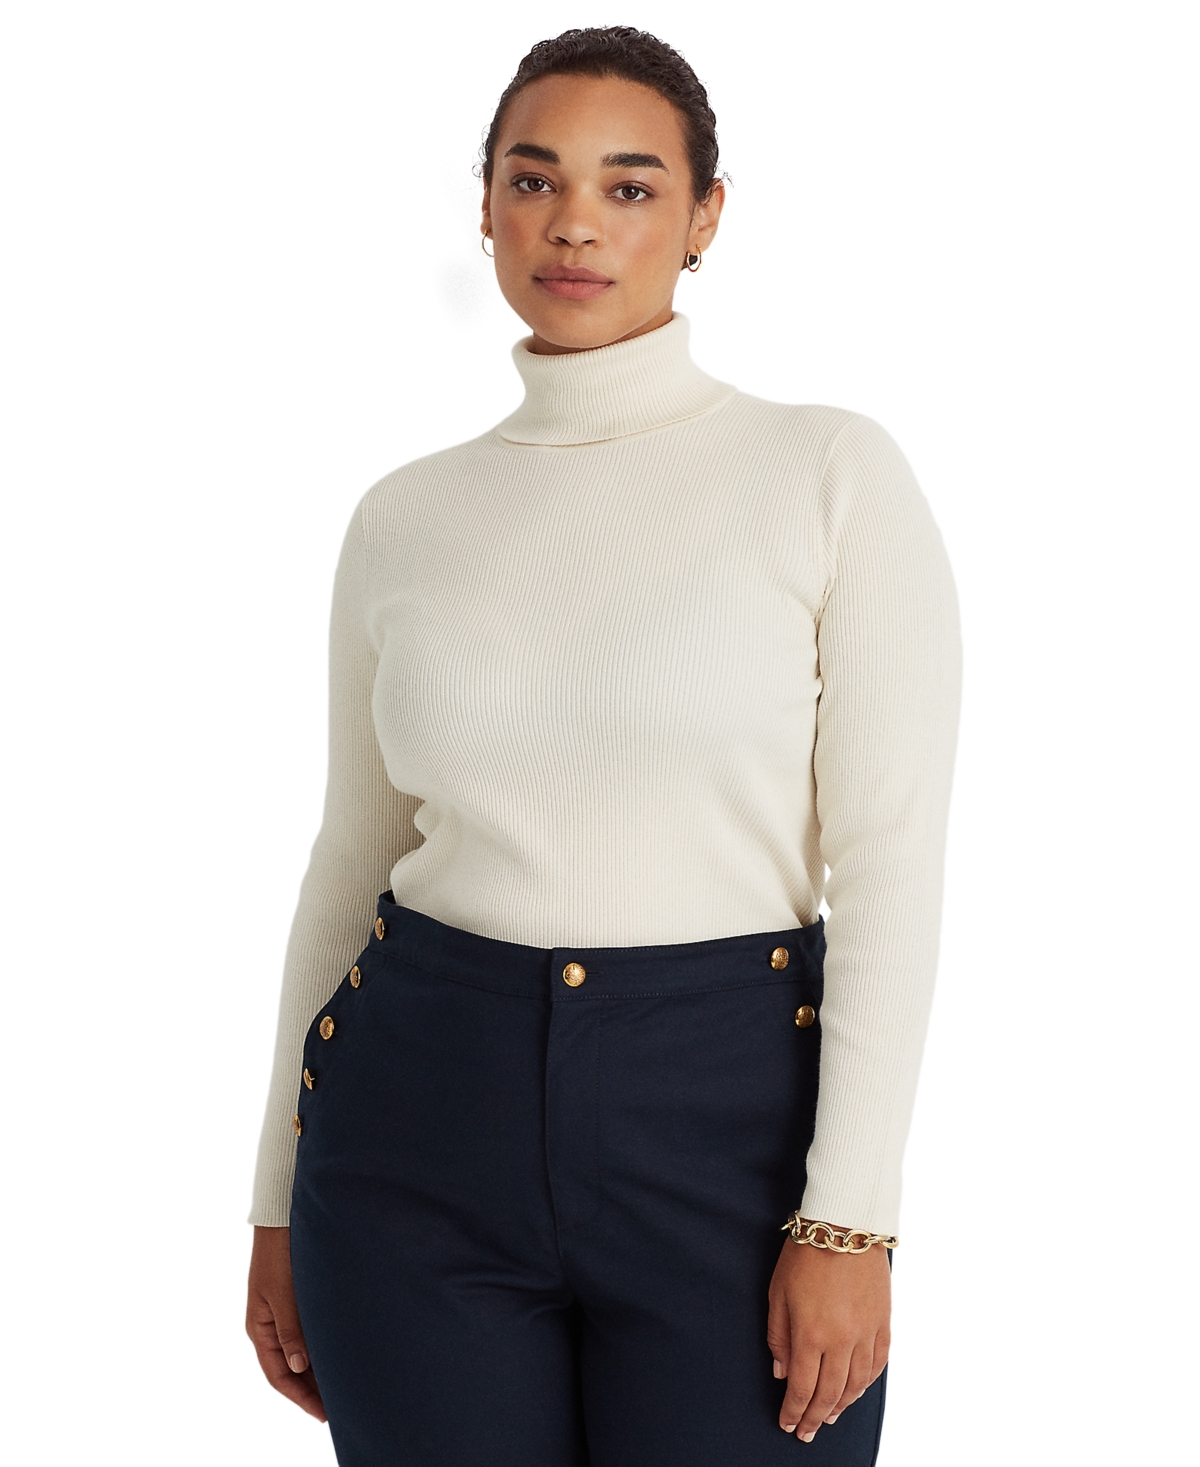 Lauren Ralph Lauren Turtleneck Sweater - Macy's  Ribbed turtleneck sweater,  Ladies turtleneck sweaters, Turtleneck outfit